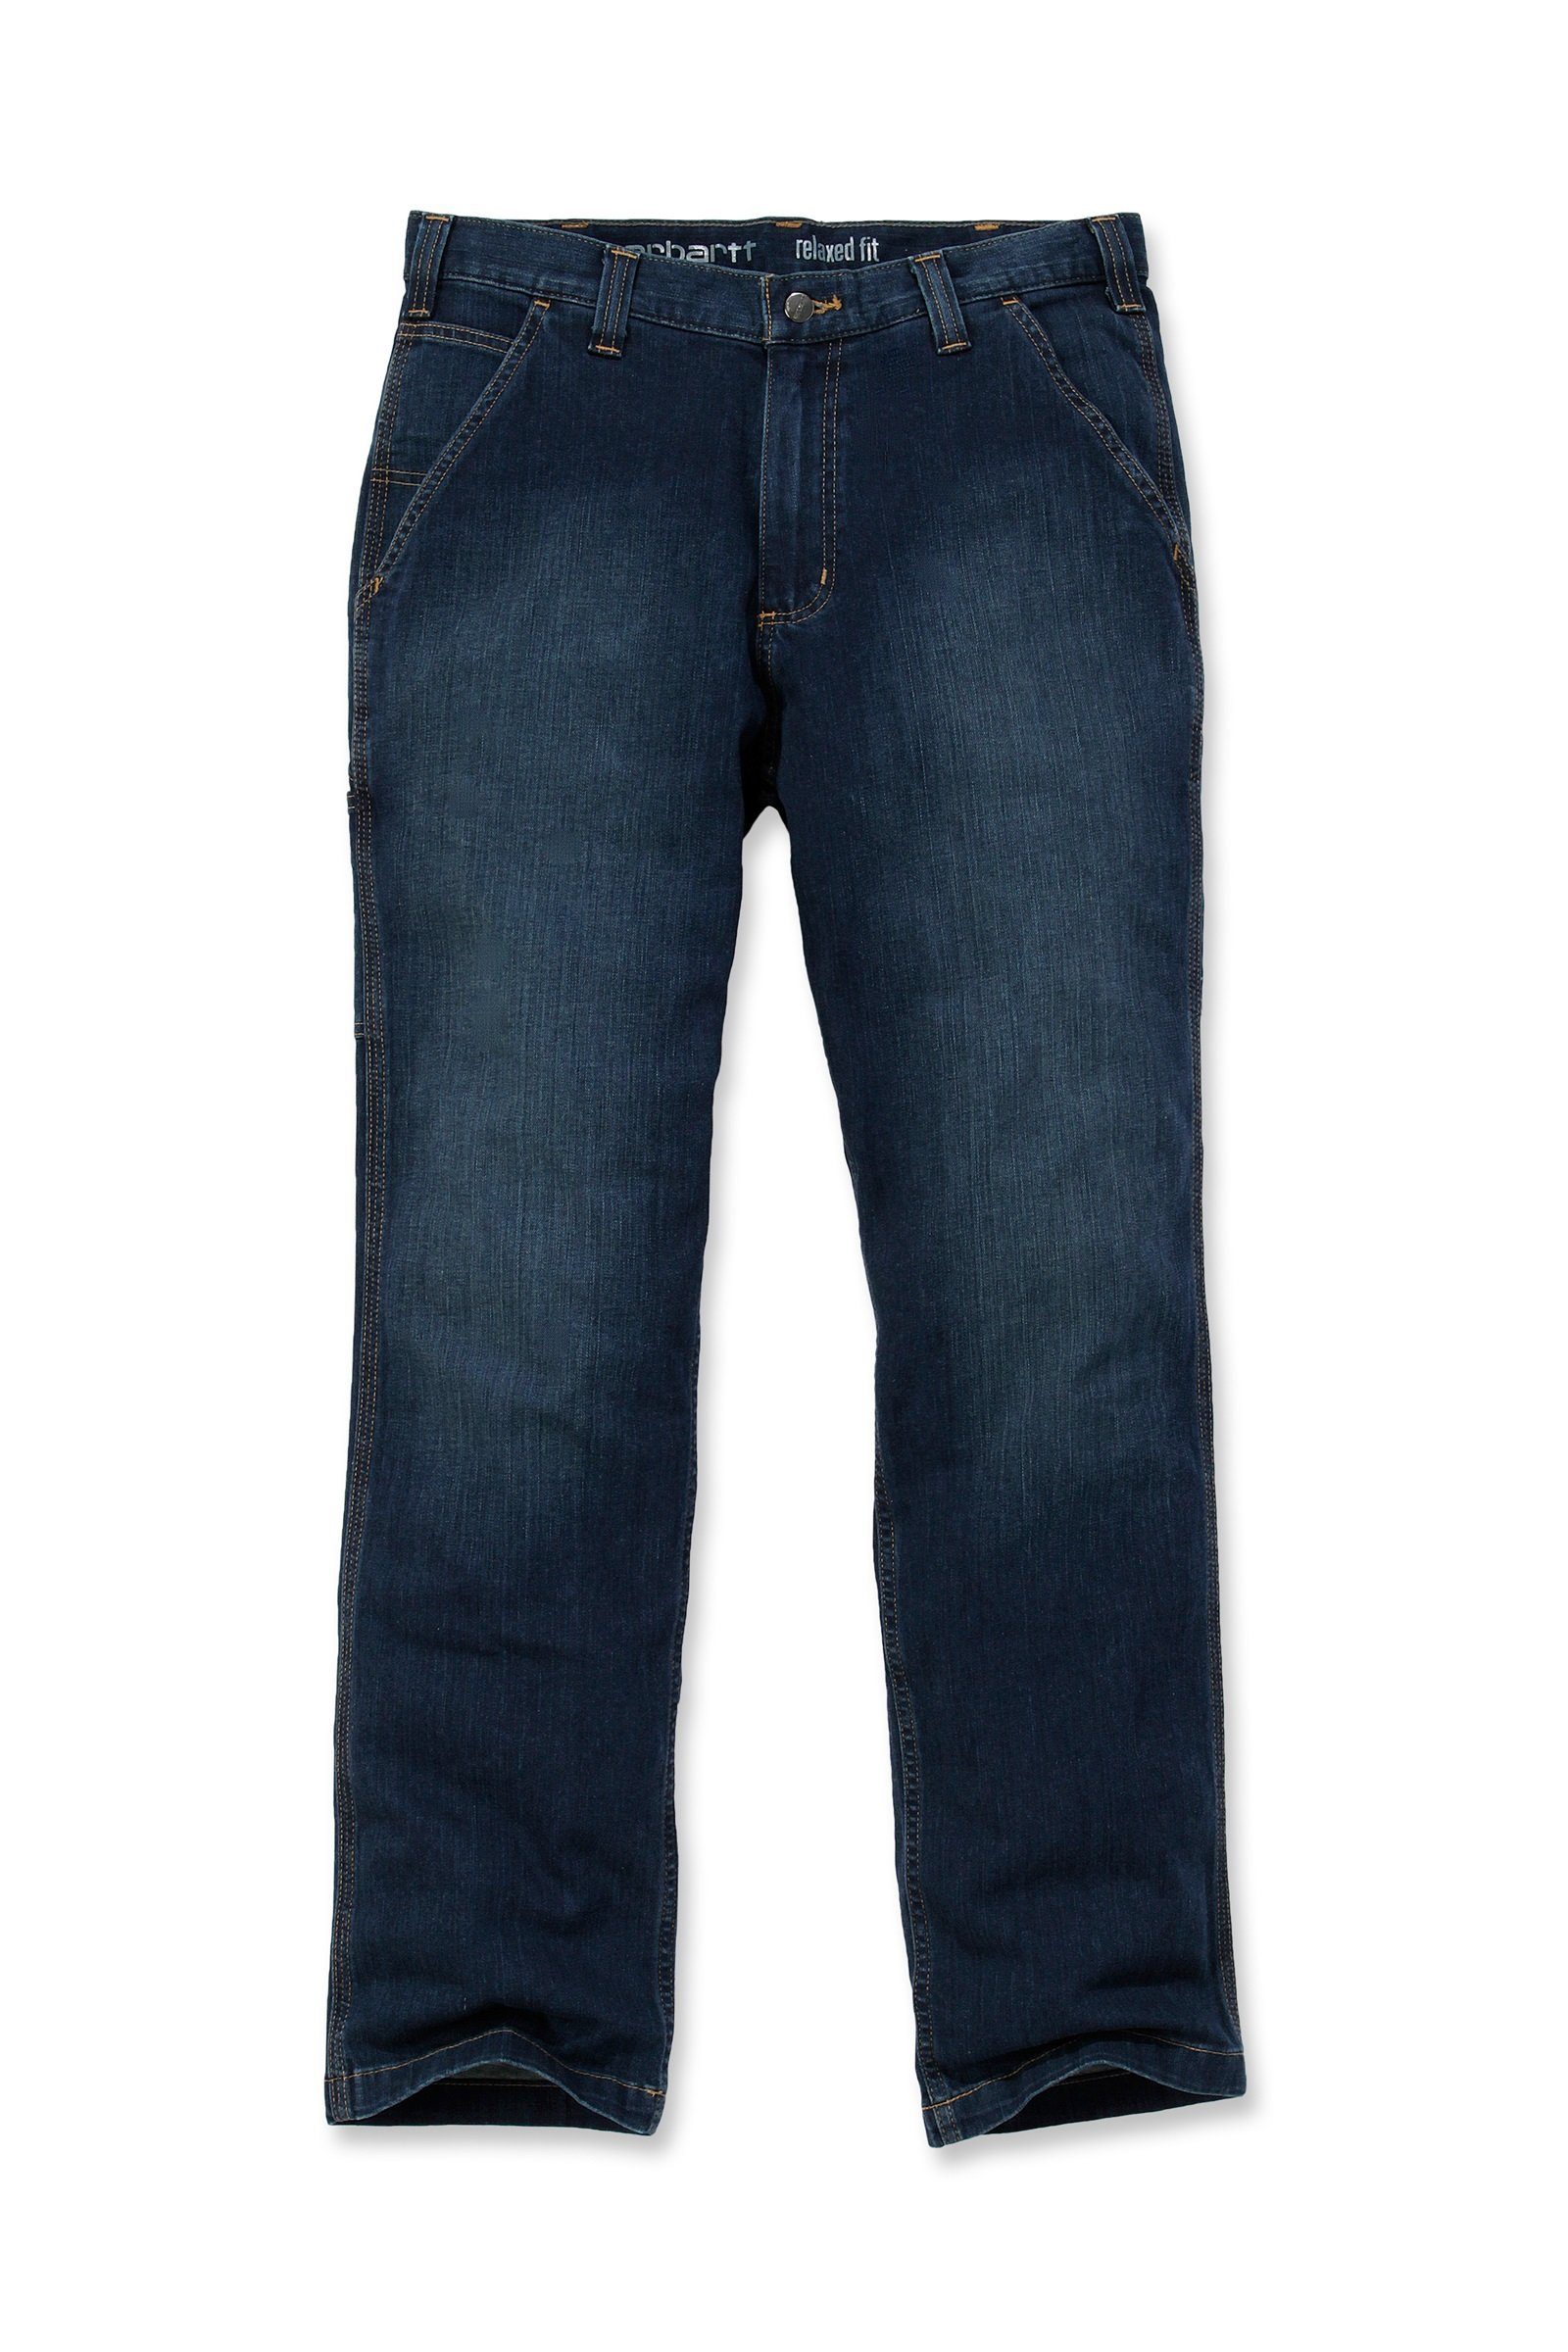 Rugged Carhartt Carhartt Relaxed Dungaree Herren Regular-fit-Jeans Flex Jeans